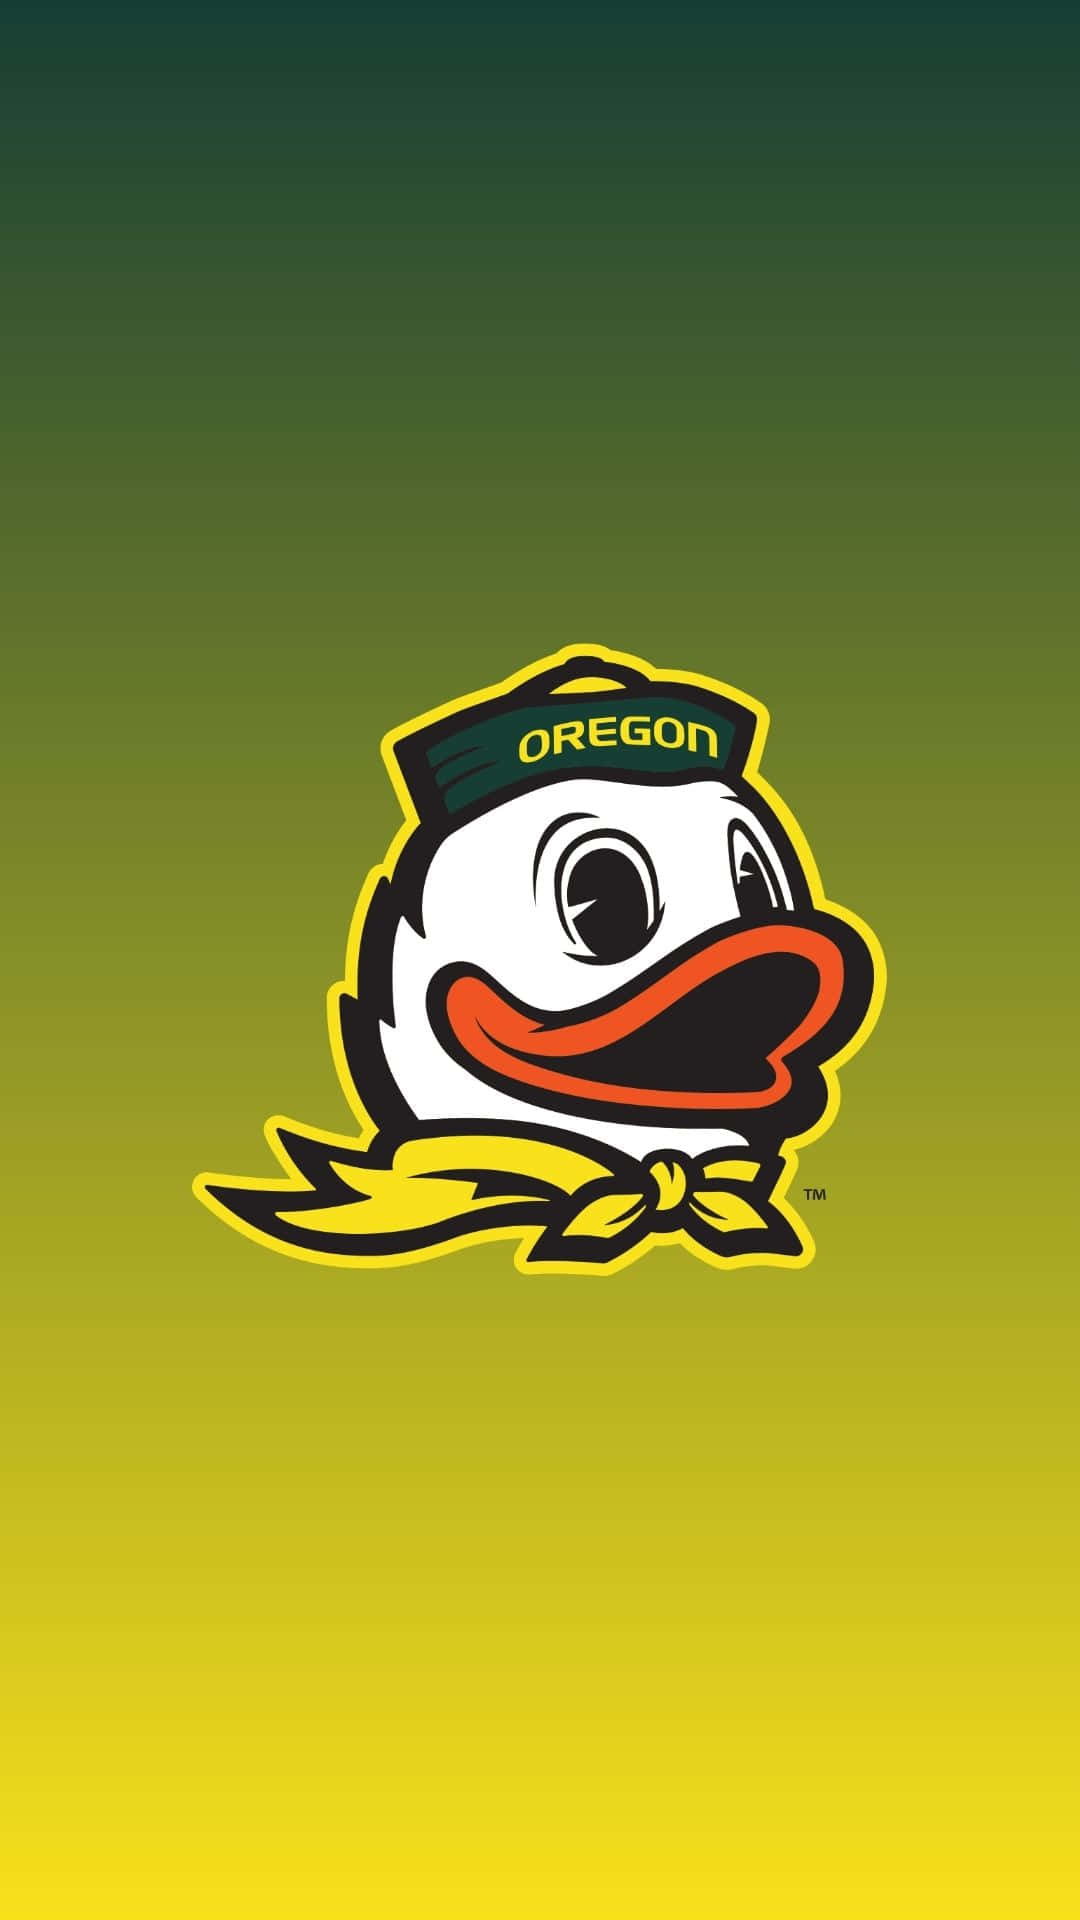 Oregon Ducks Football Team Logo Wallpaper